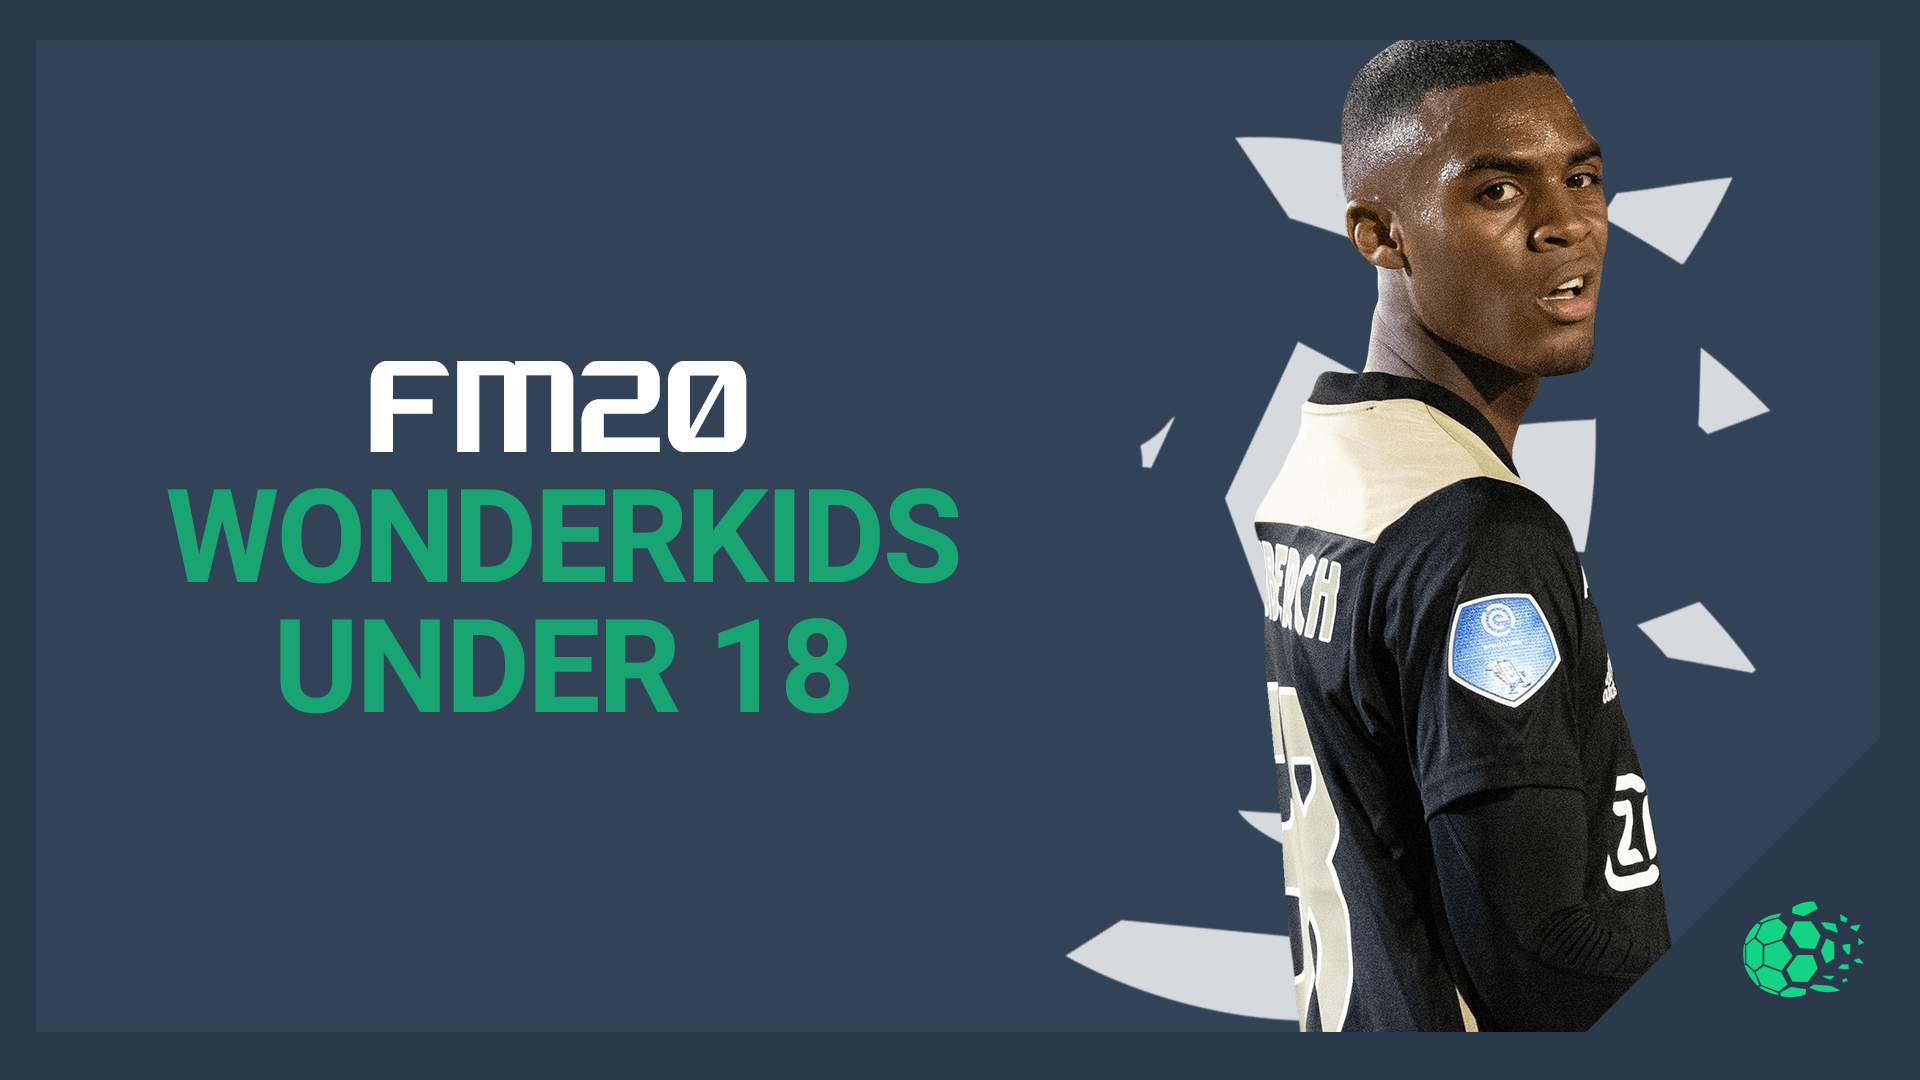 FM20 Wonderkids (Under 18)